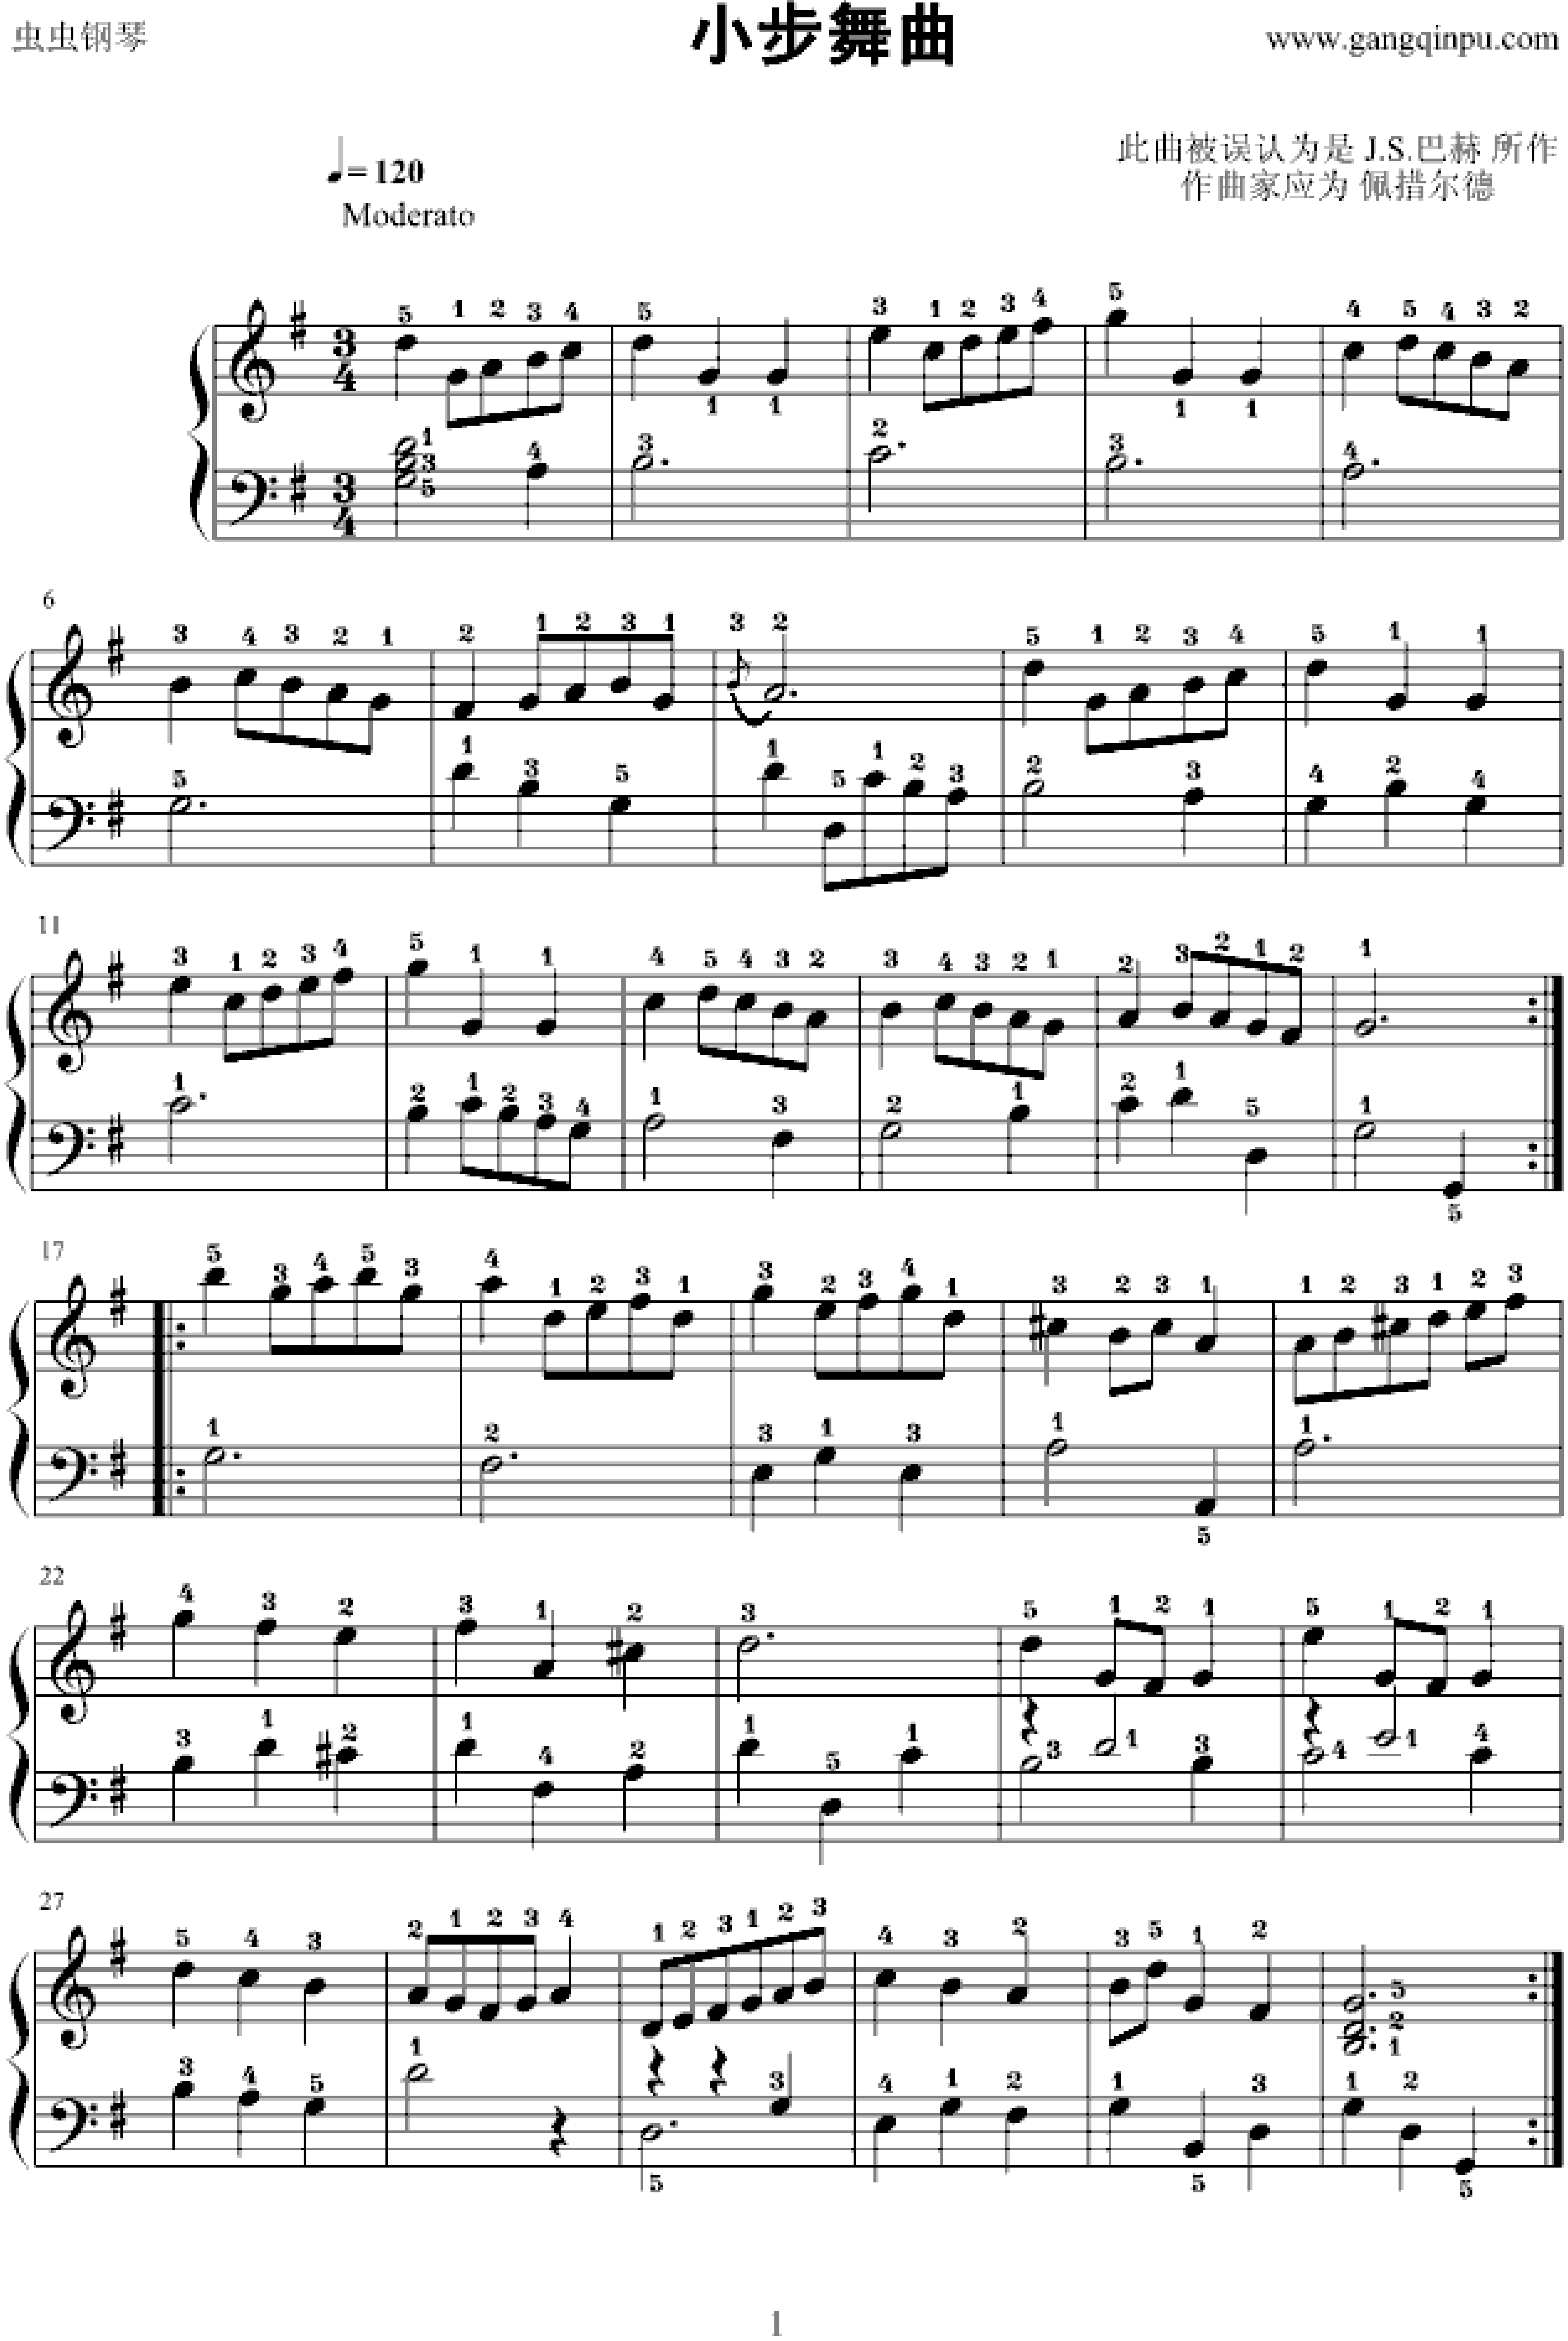 《小步舞曲(G大调,钢琴谱》-巴赫-全程指法,巴赫|弹琴吧|钢琴谱|吉他谱|钢琴曲|乐谱|五线谱|高清免费下载|蛐蛐钢琴网